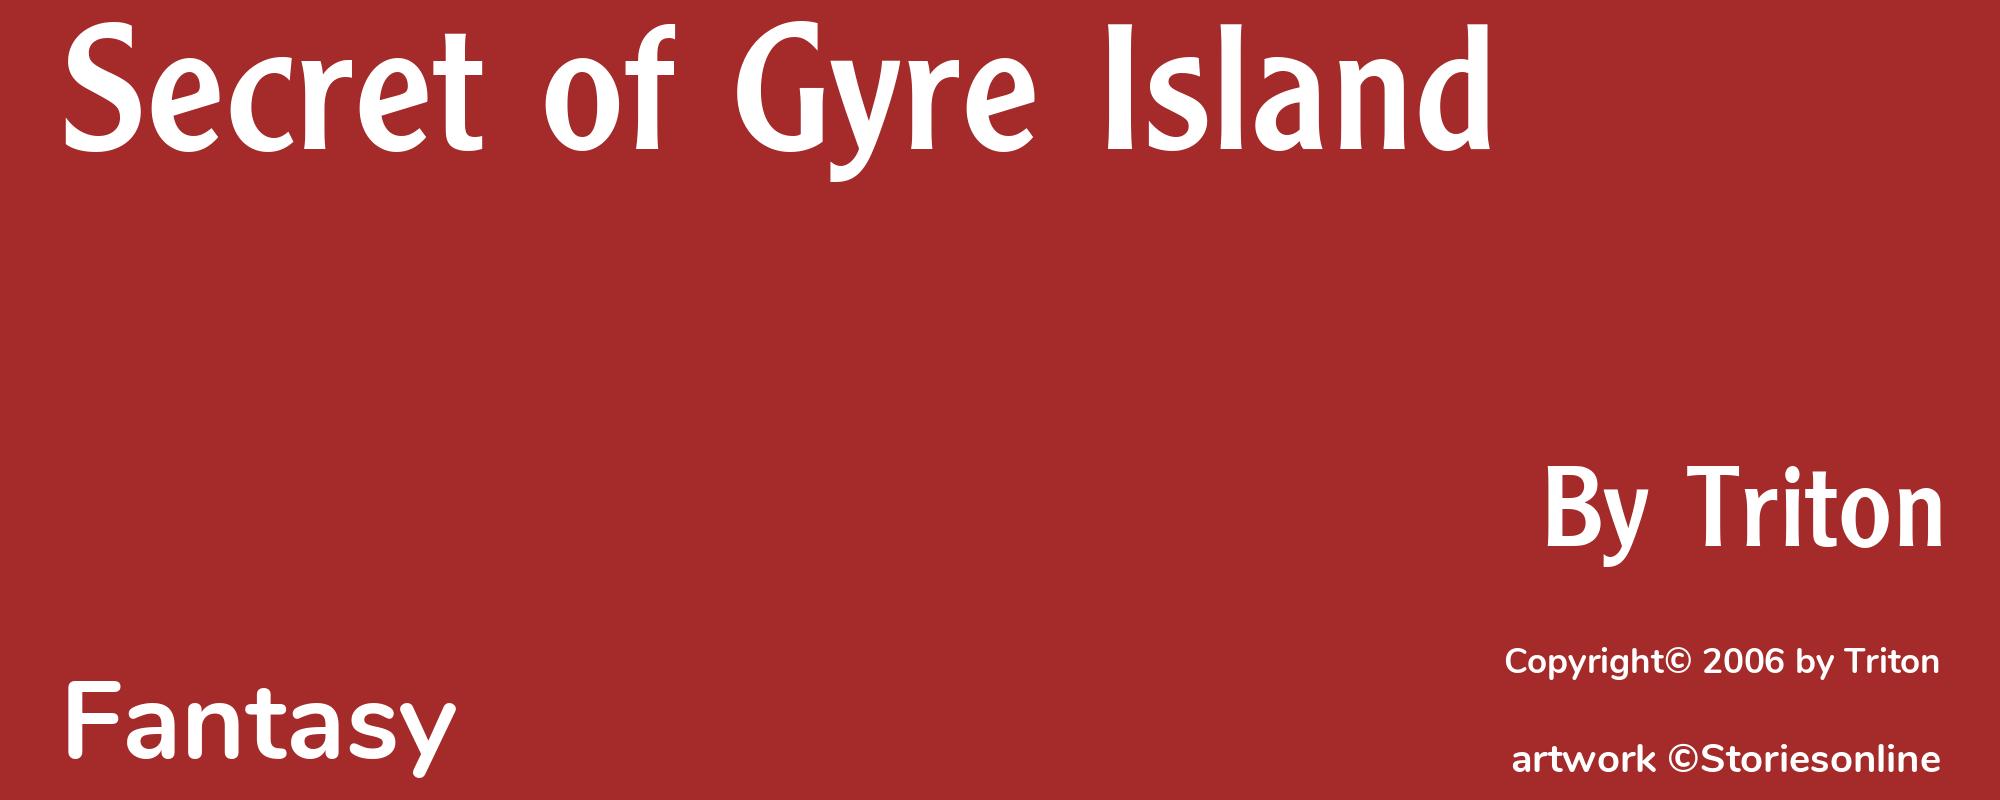 Secret of Gyre Island - Cover